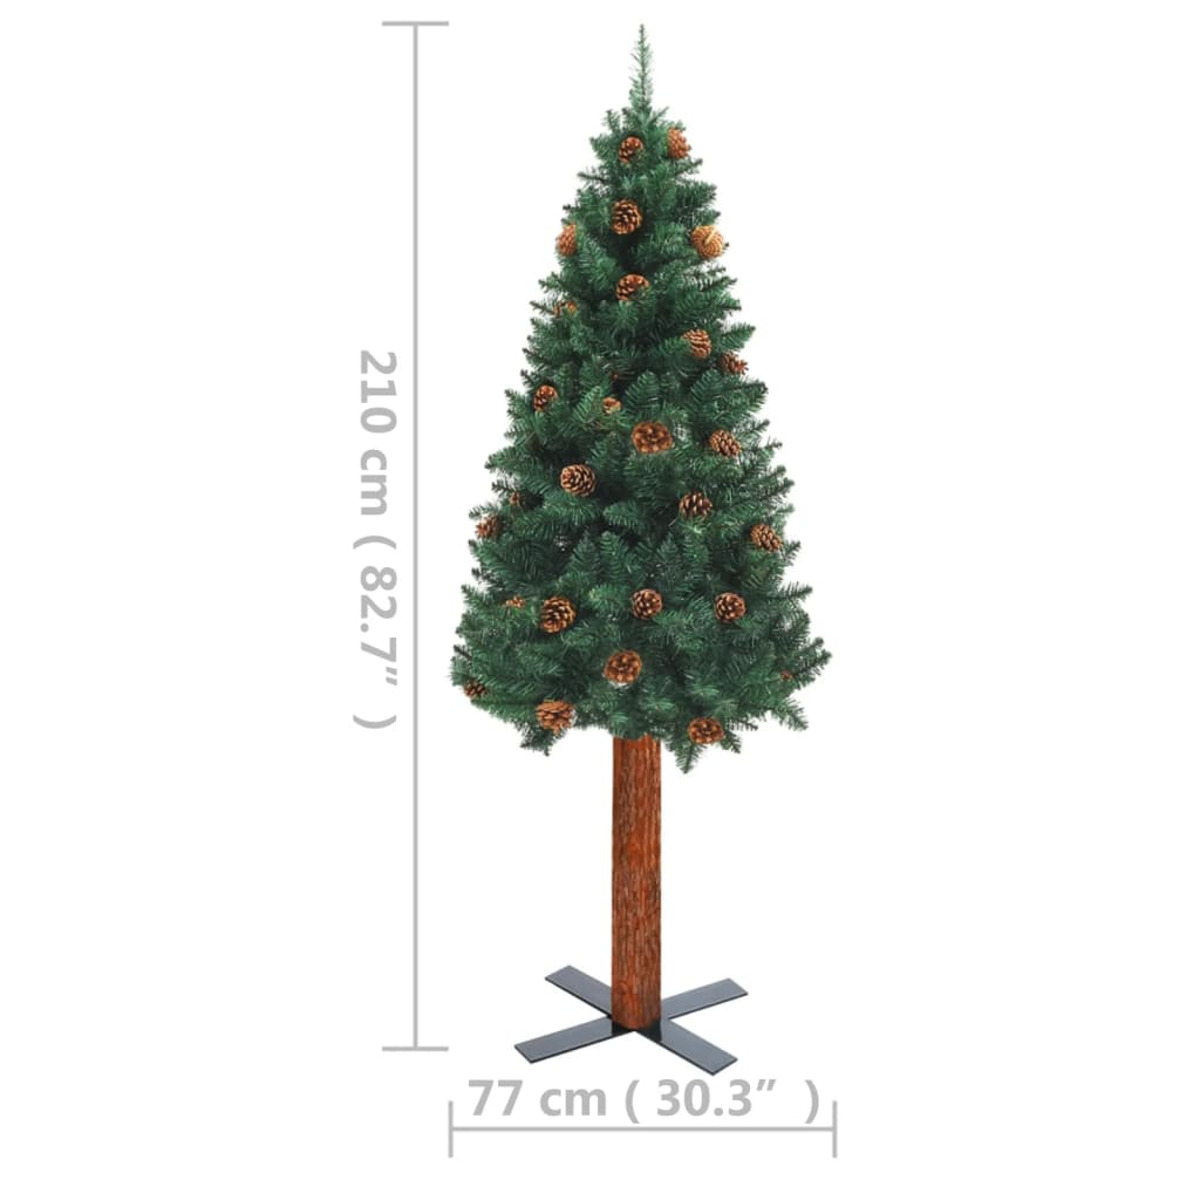 VIDAXL 3077761 Weihnachtsbaum